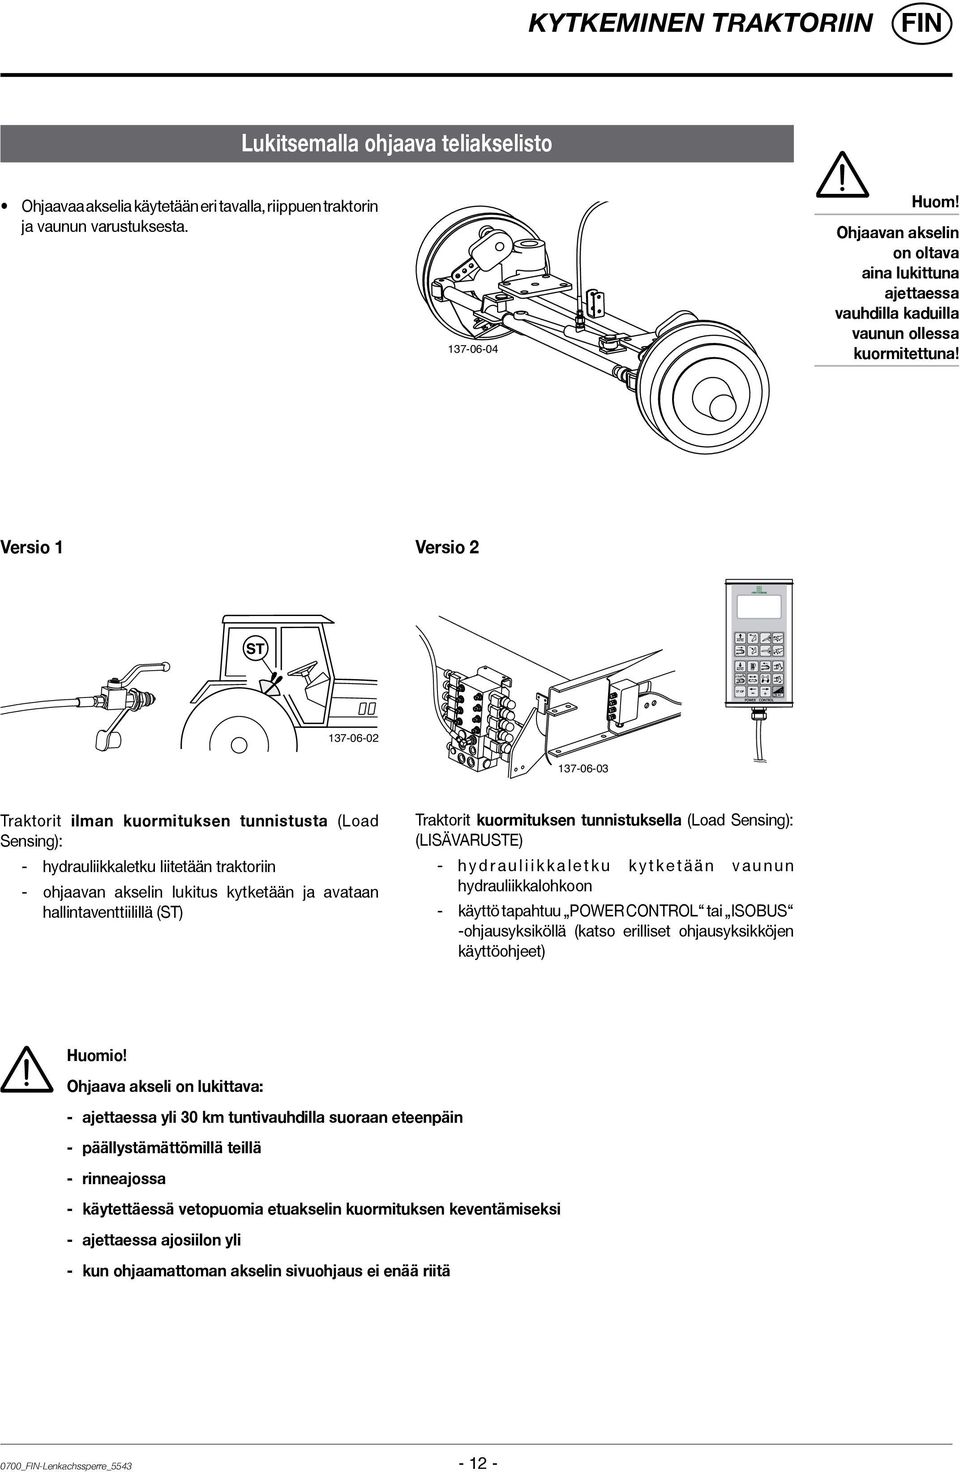 Versio 1 Versio 2 137-06-02 137-06-03 Traktorit ilman kuormituksen tunnistusta (Load Sensing): - hydrauliikkaletku liitetään traktoriin - ohjaavan akselin lukitus kytketään ja avataan